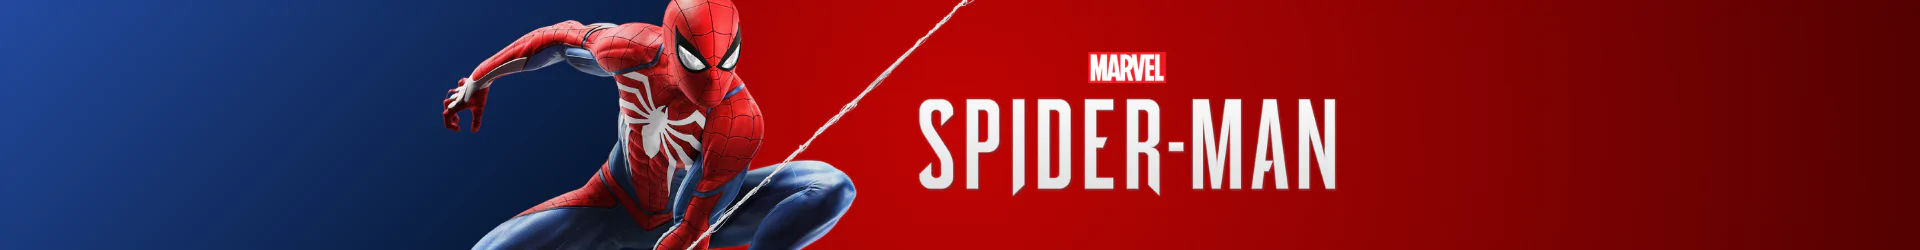 Spider-Man socken banner